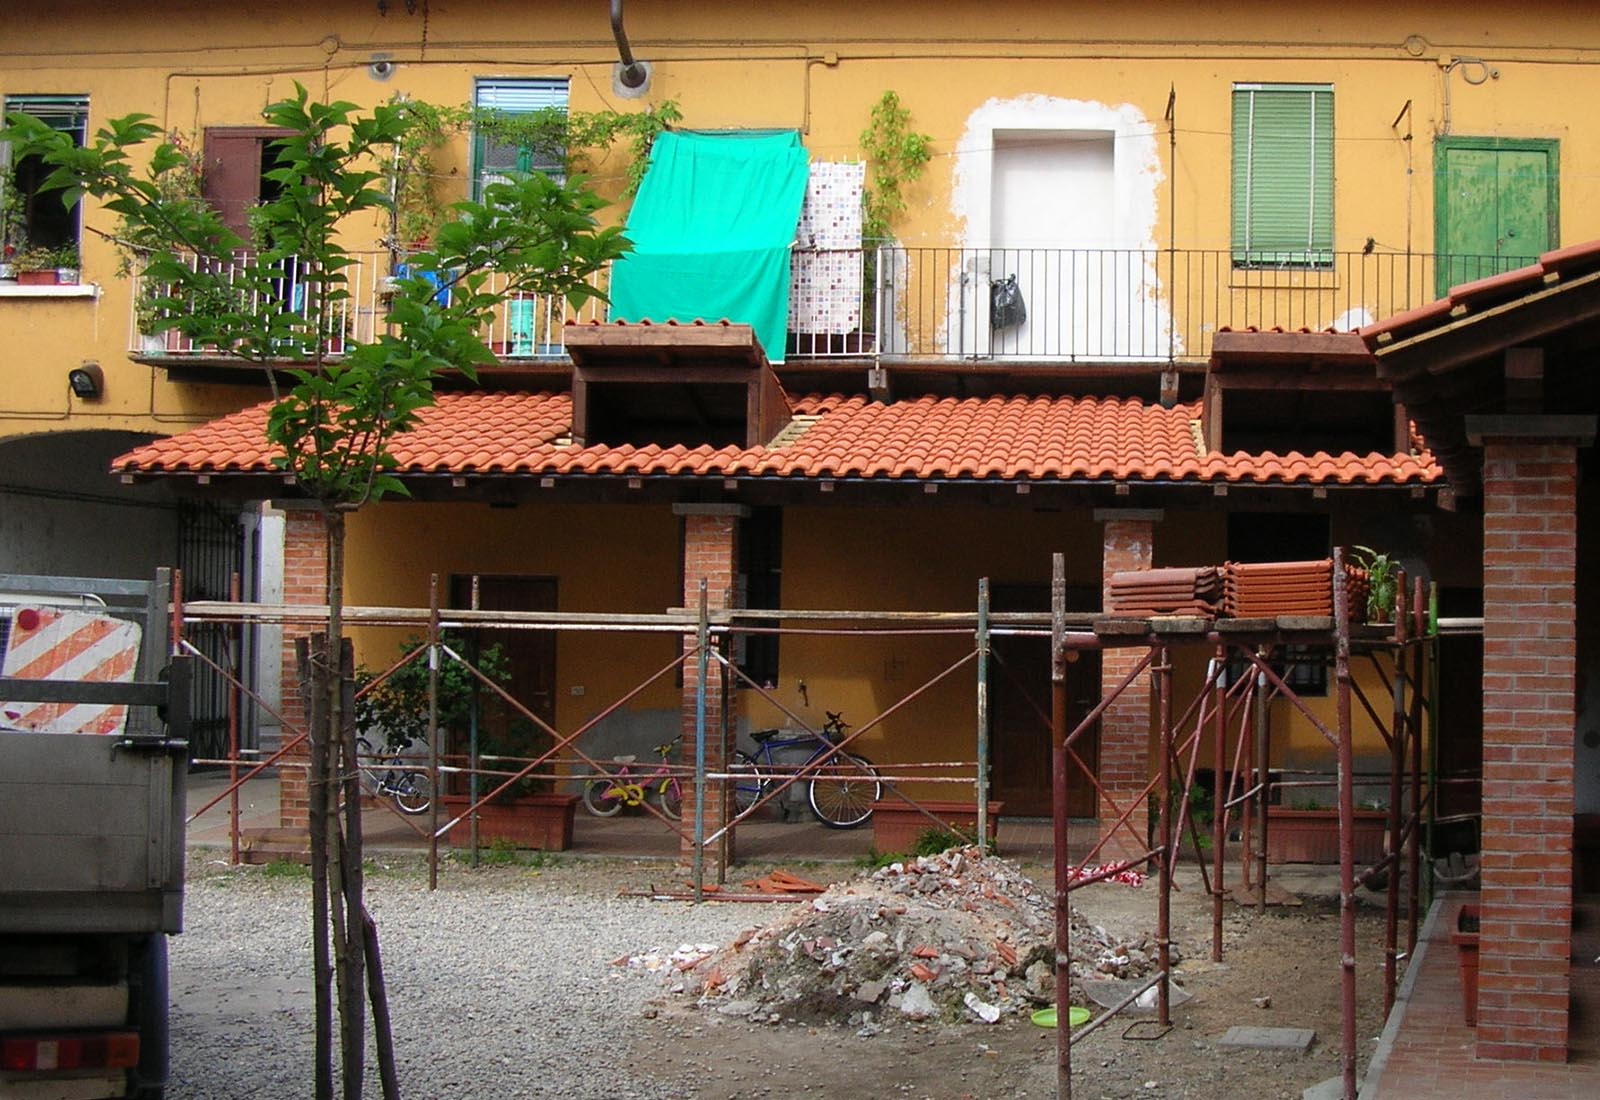 Comunità alloggio a Milano Baggio in via Due Giugno - La corte interna